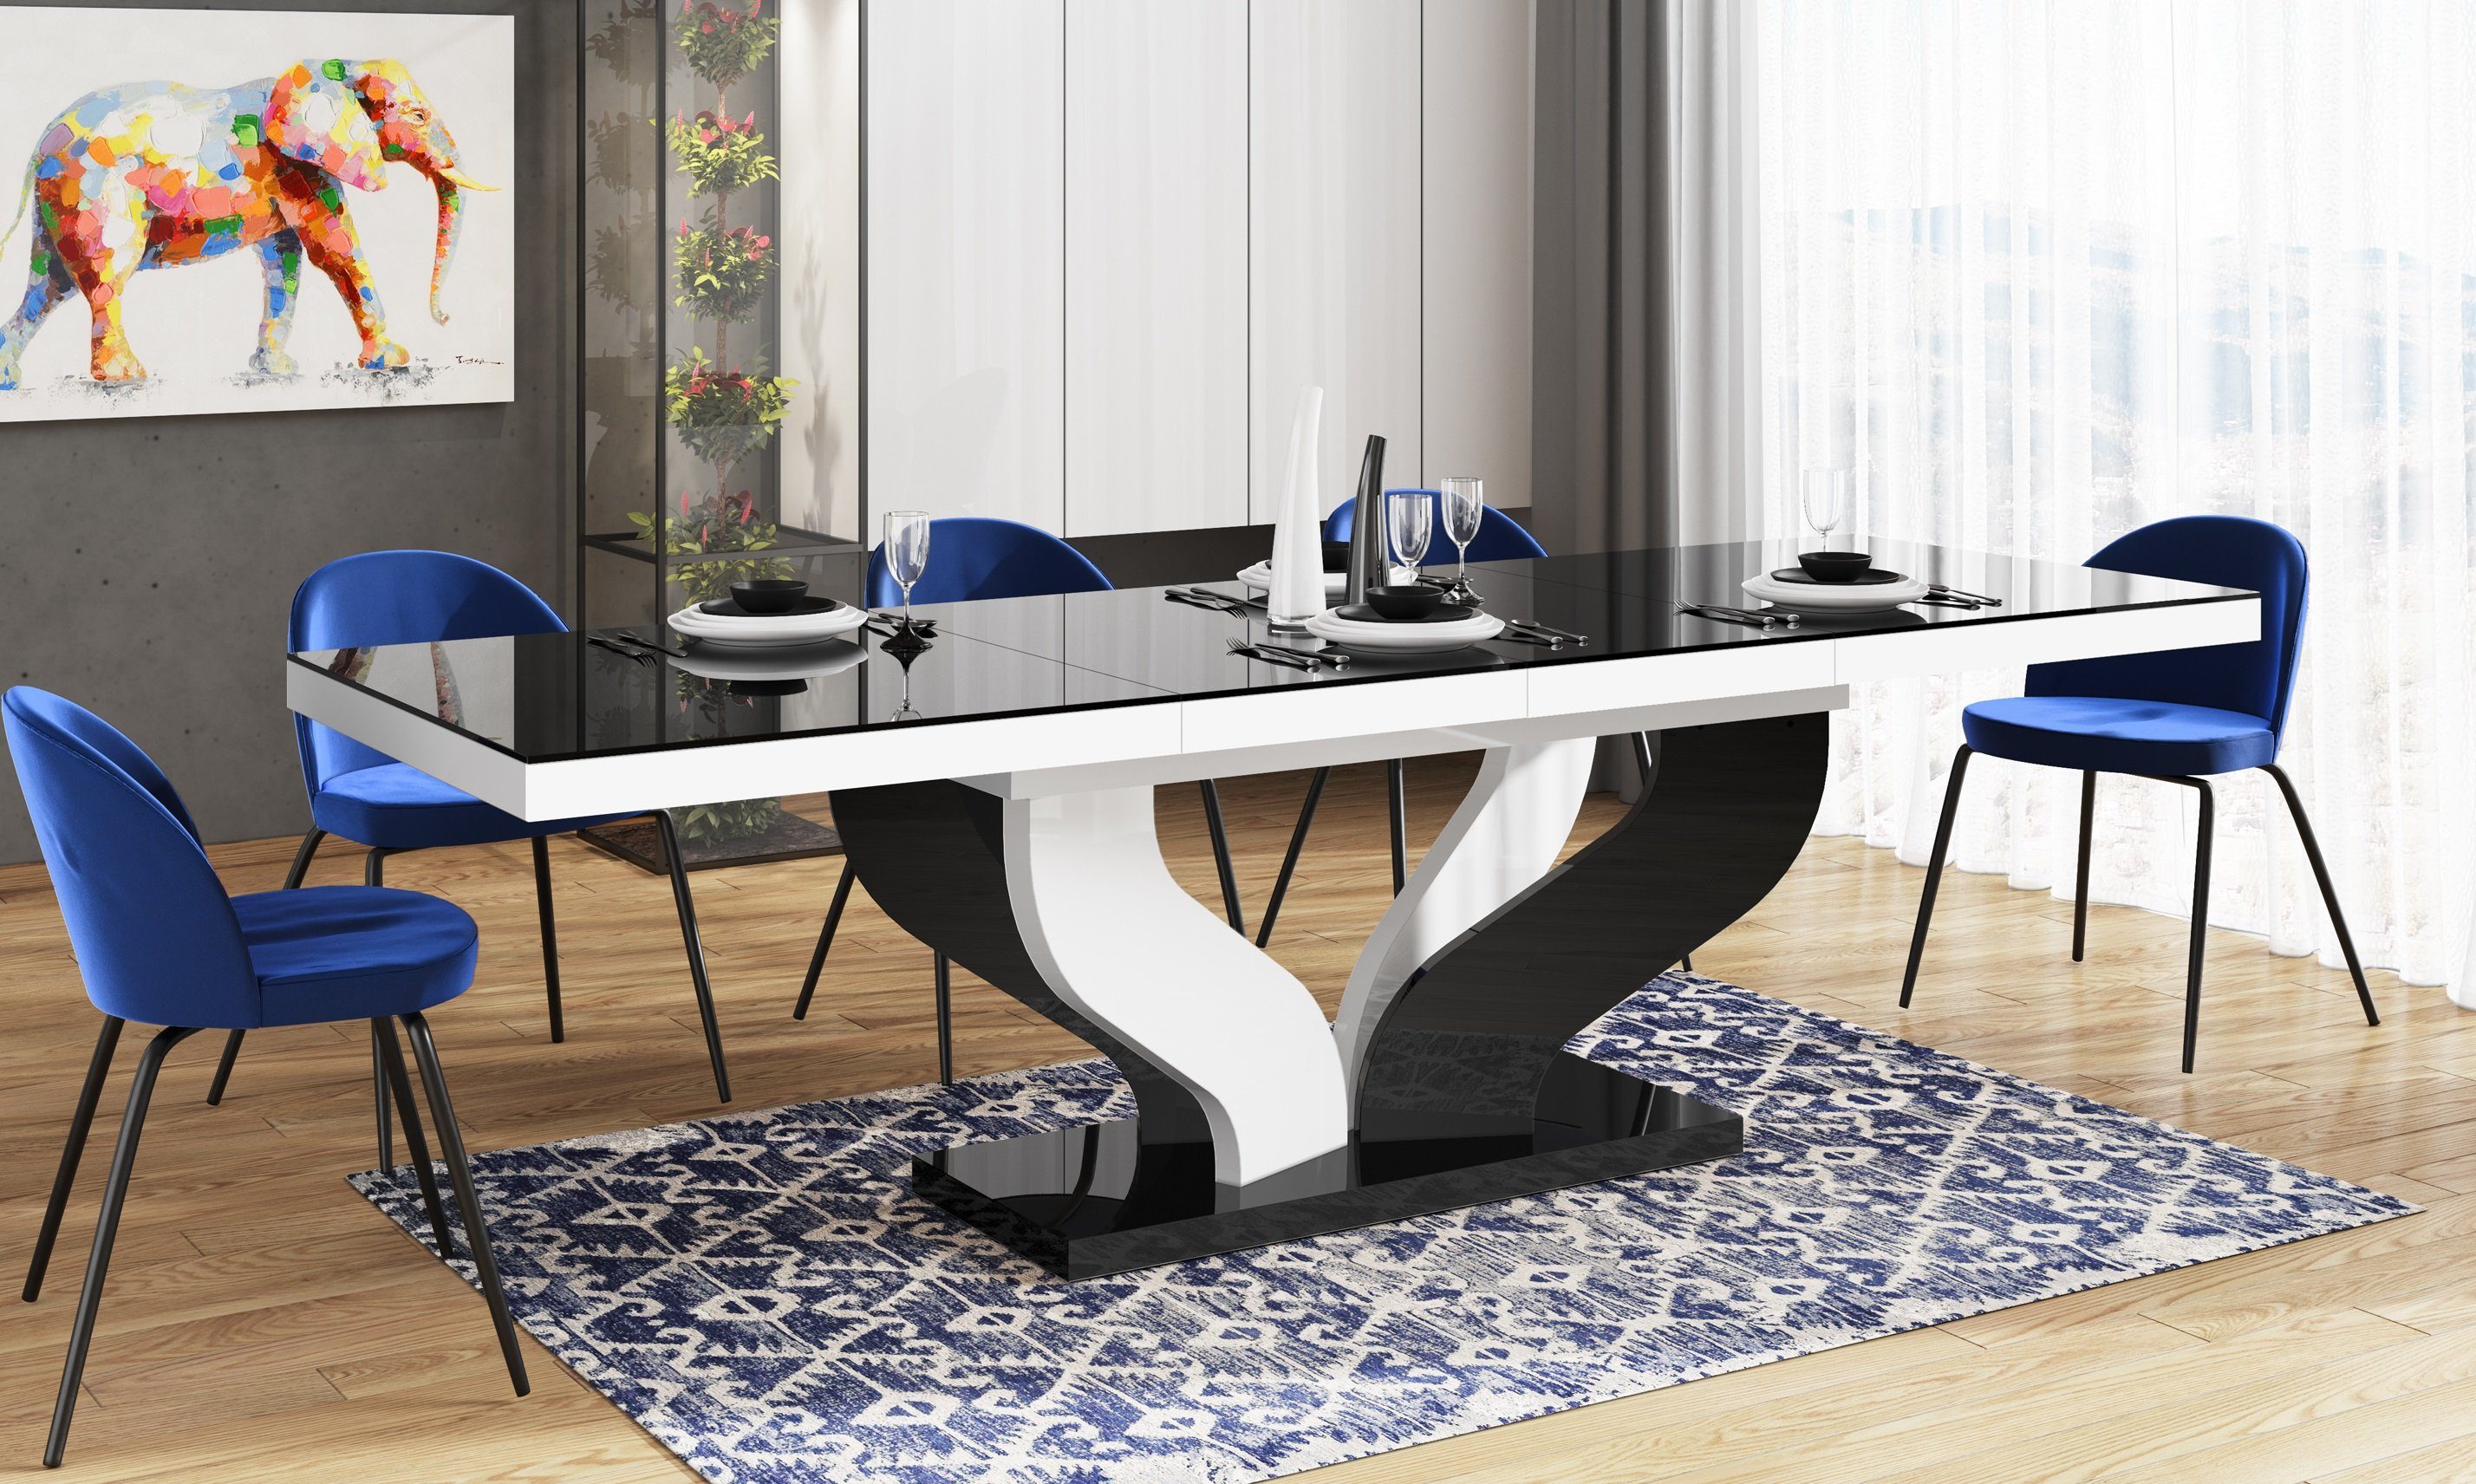 designimpex Esstisch Design Tisch HEB-222 Schwarz / Weiß Hochglanz ausziehbar 160 bis 256cm